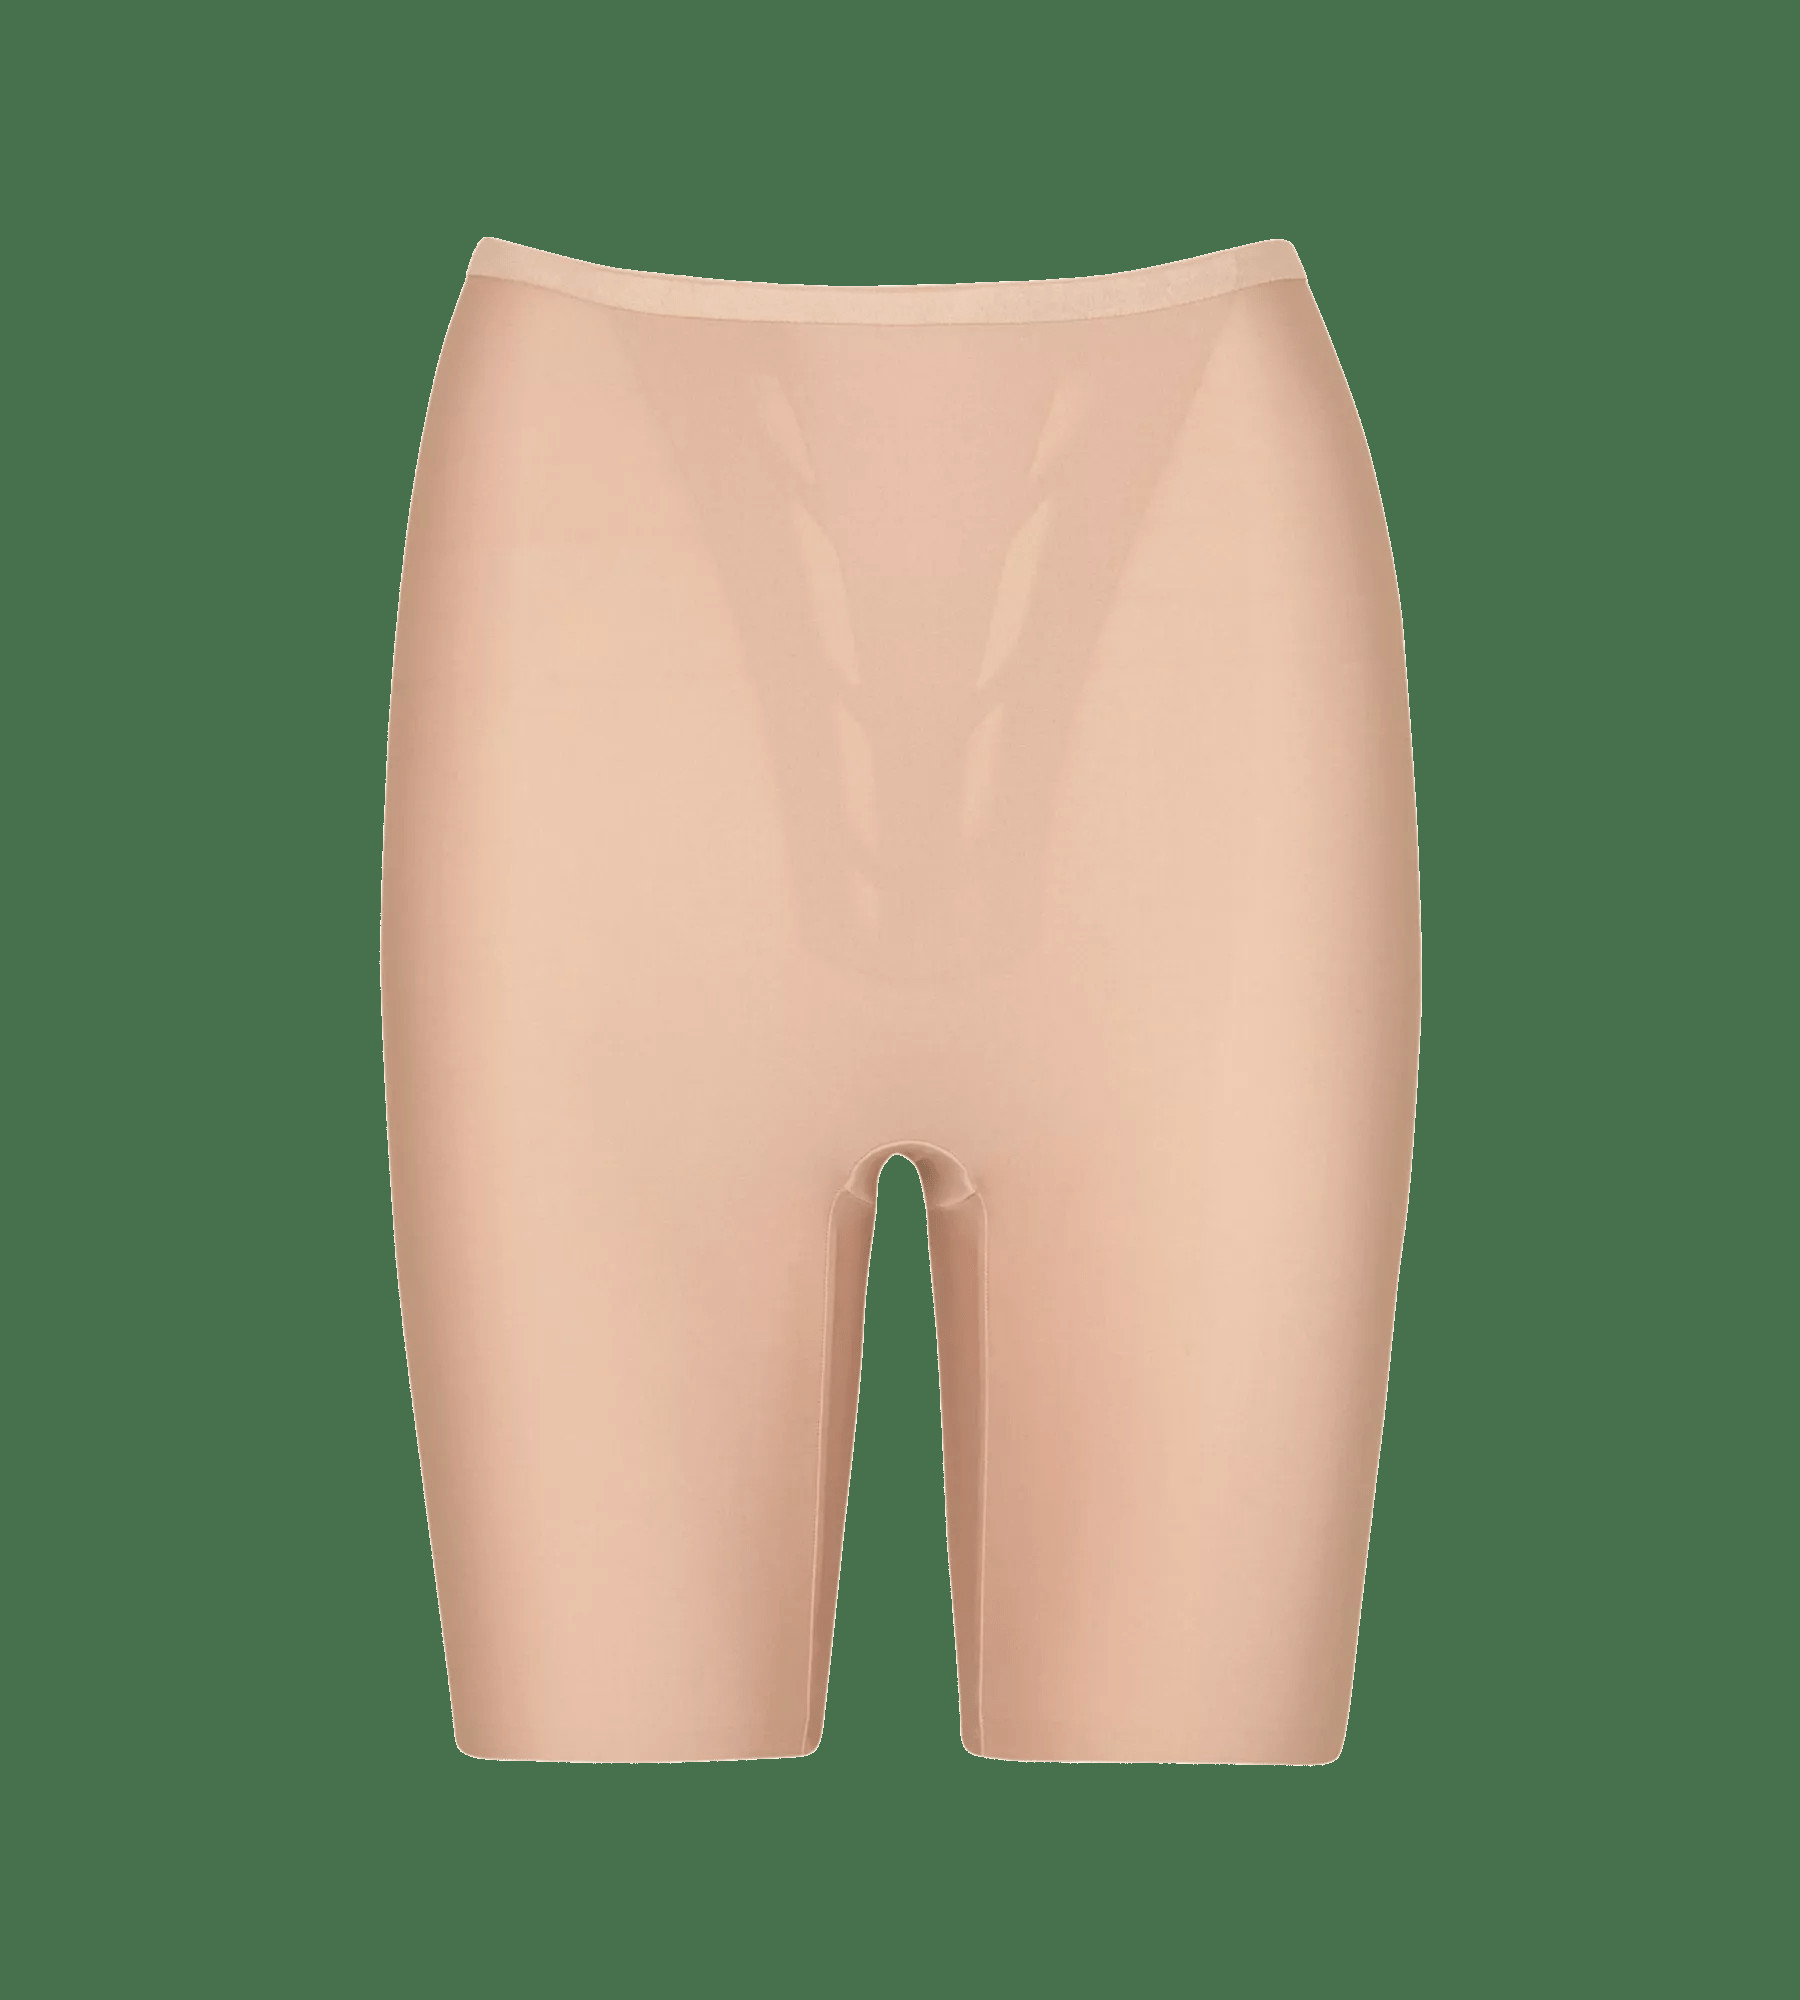 Stahovací kalhotky s Shape Smart Panty L BEIGE béžová BEIGE XL model 18017622 - Triumph